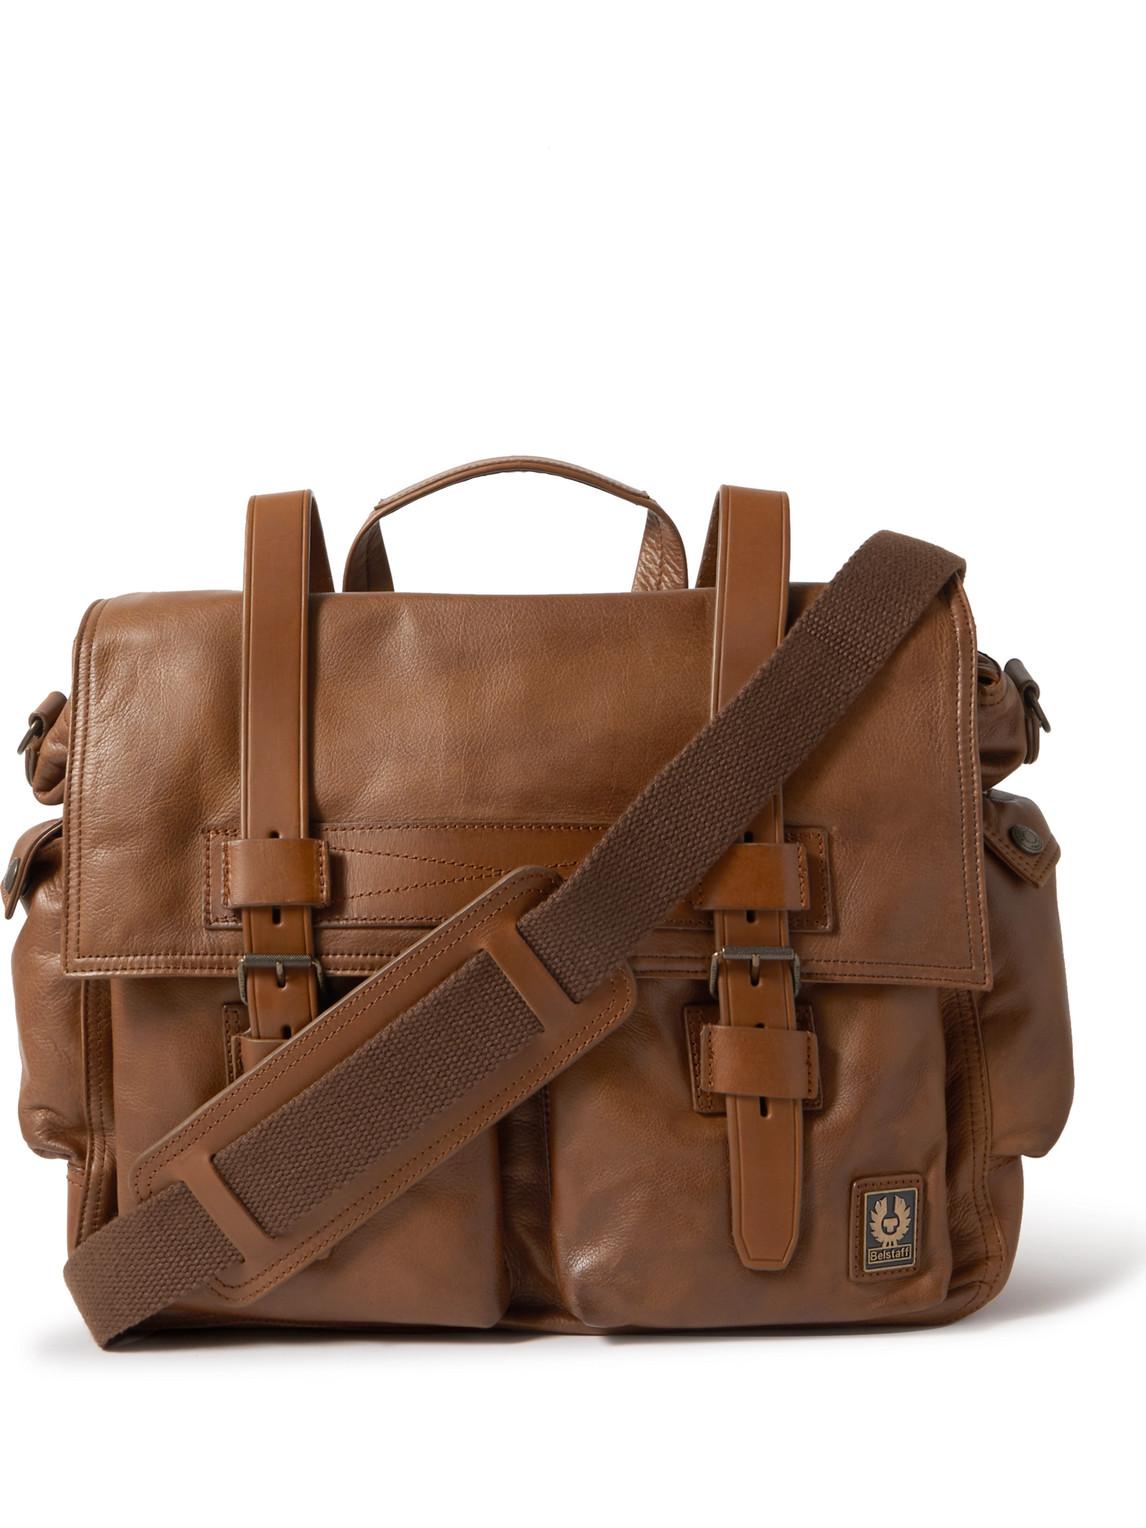 Belstaff Leather Messenger Bag in Brown for Men | Lyst